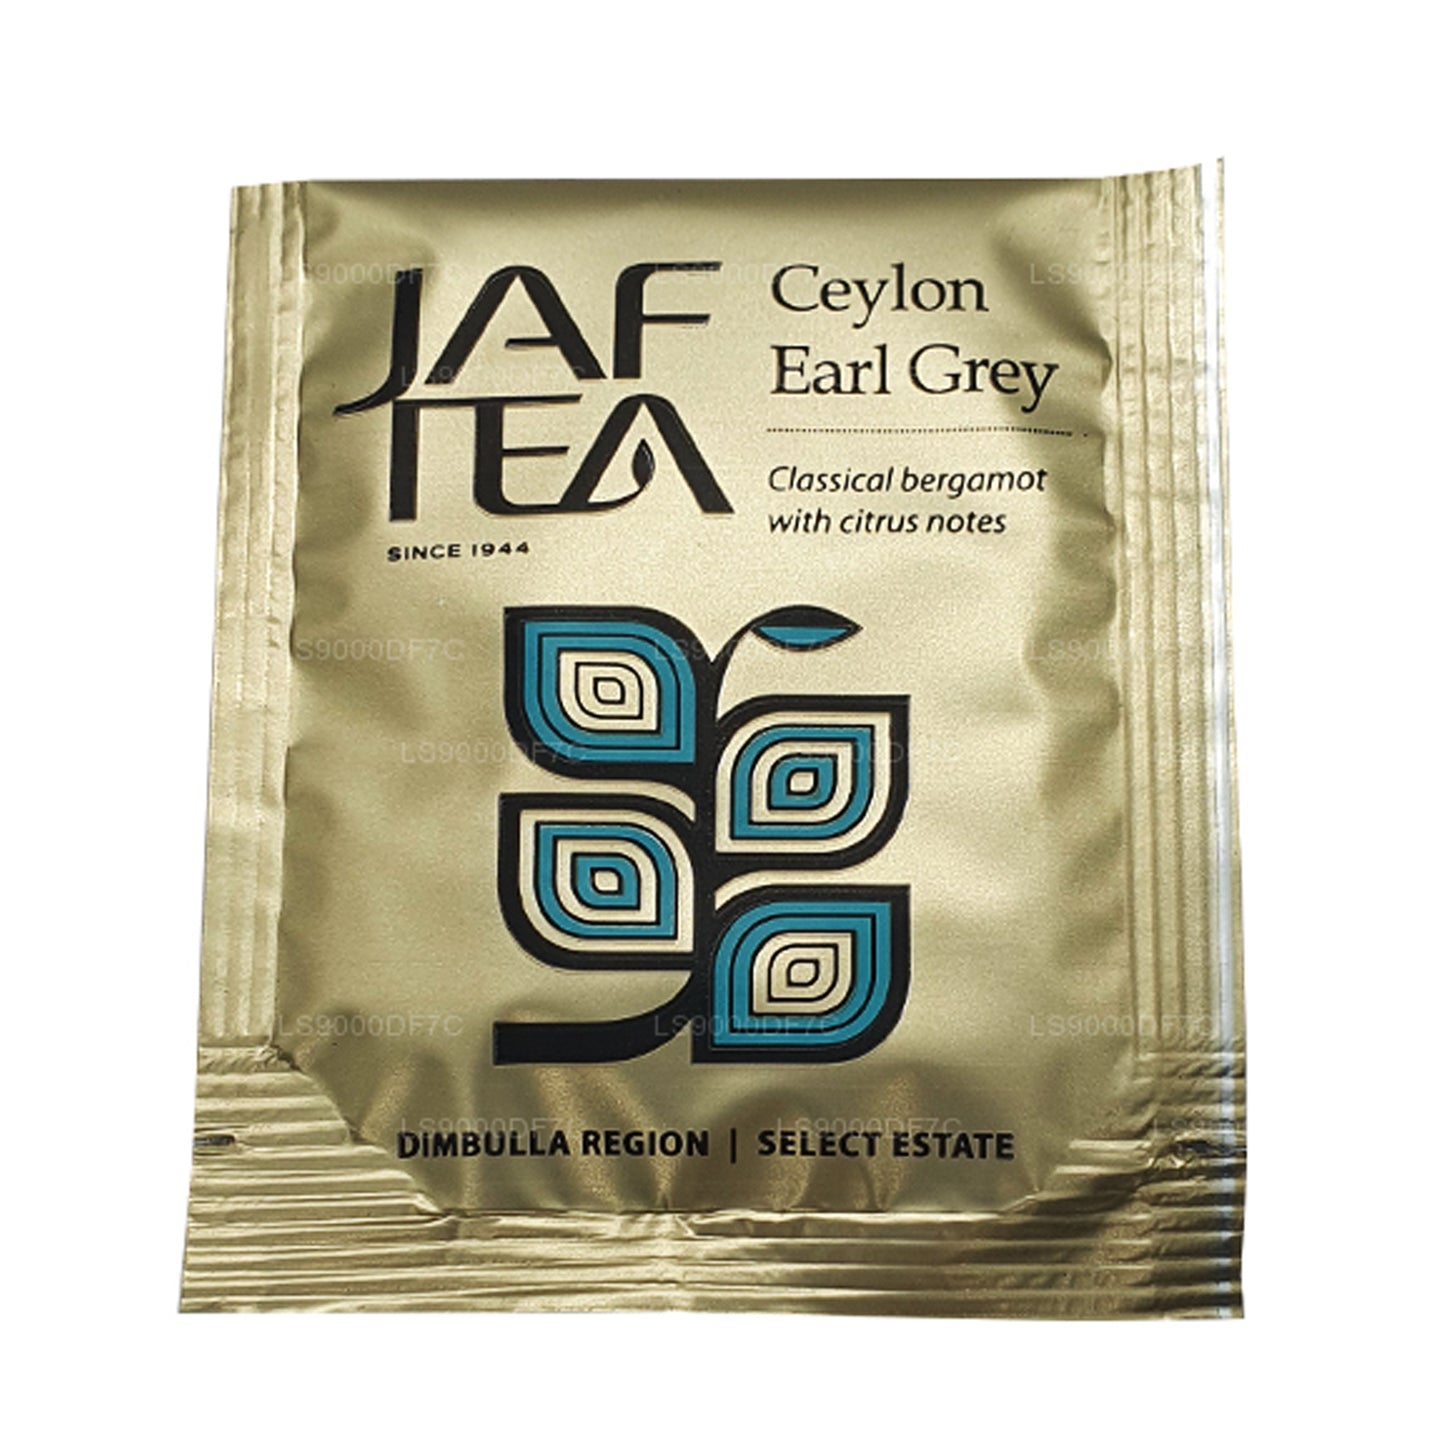 Чистые чаи и настои Jaf Tea (145 г) 80 пакетиков чая